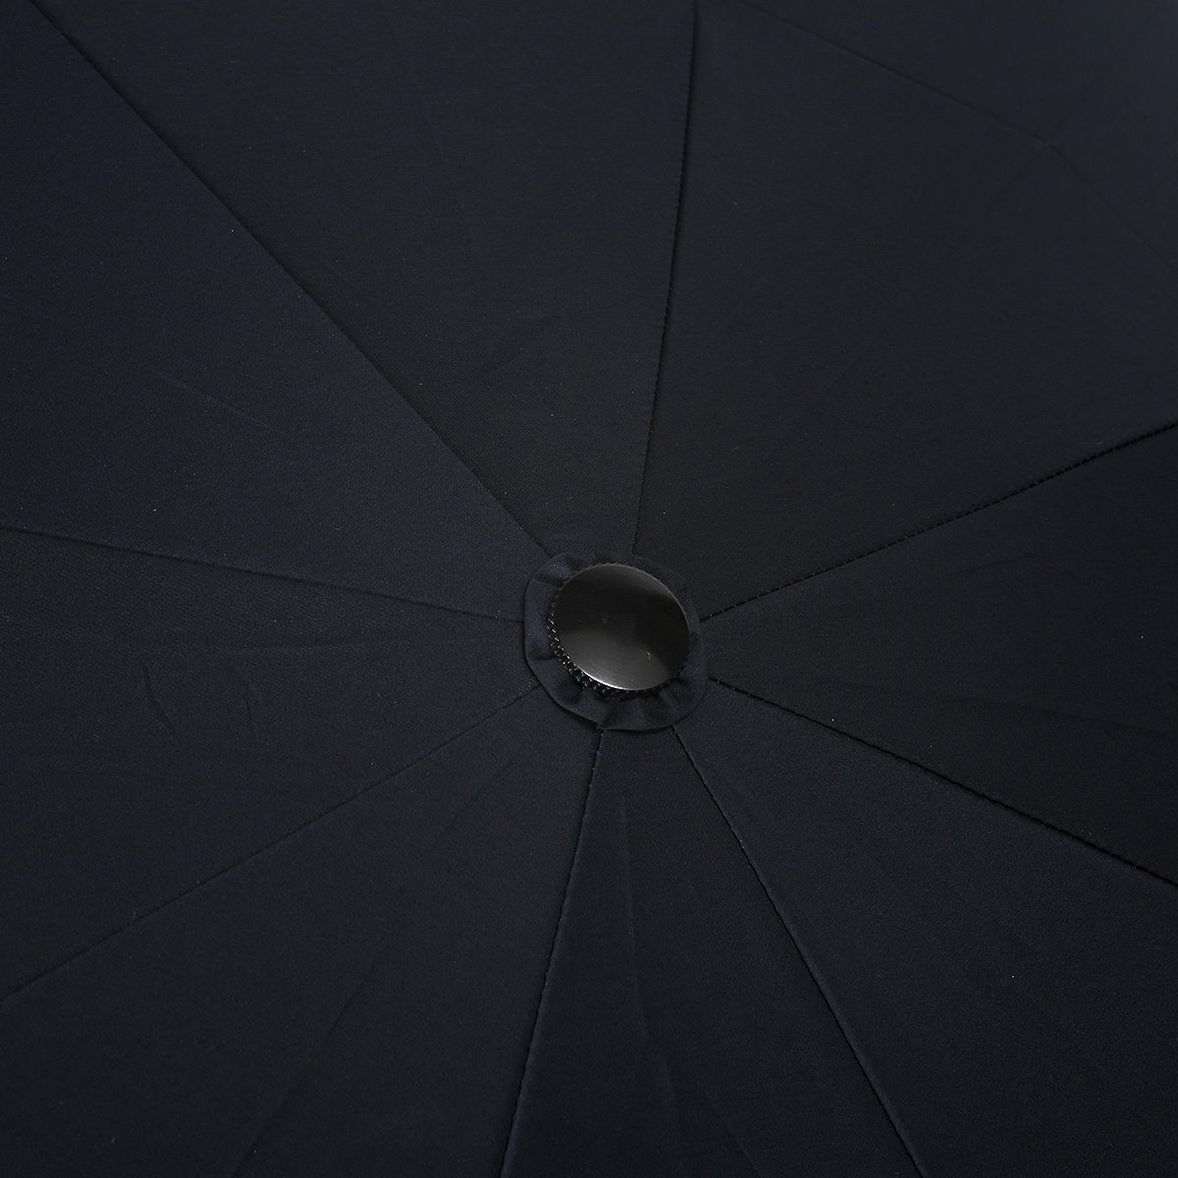 【公式限定】強力撥水 レインドロップ レクタス 耐風骨 レディース 折りたたみ傘